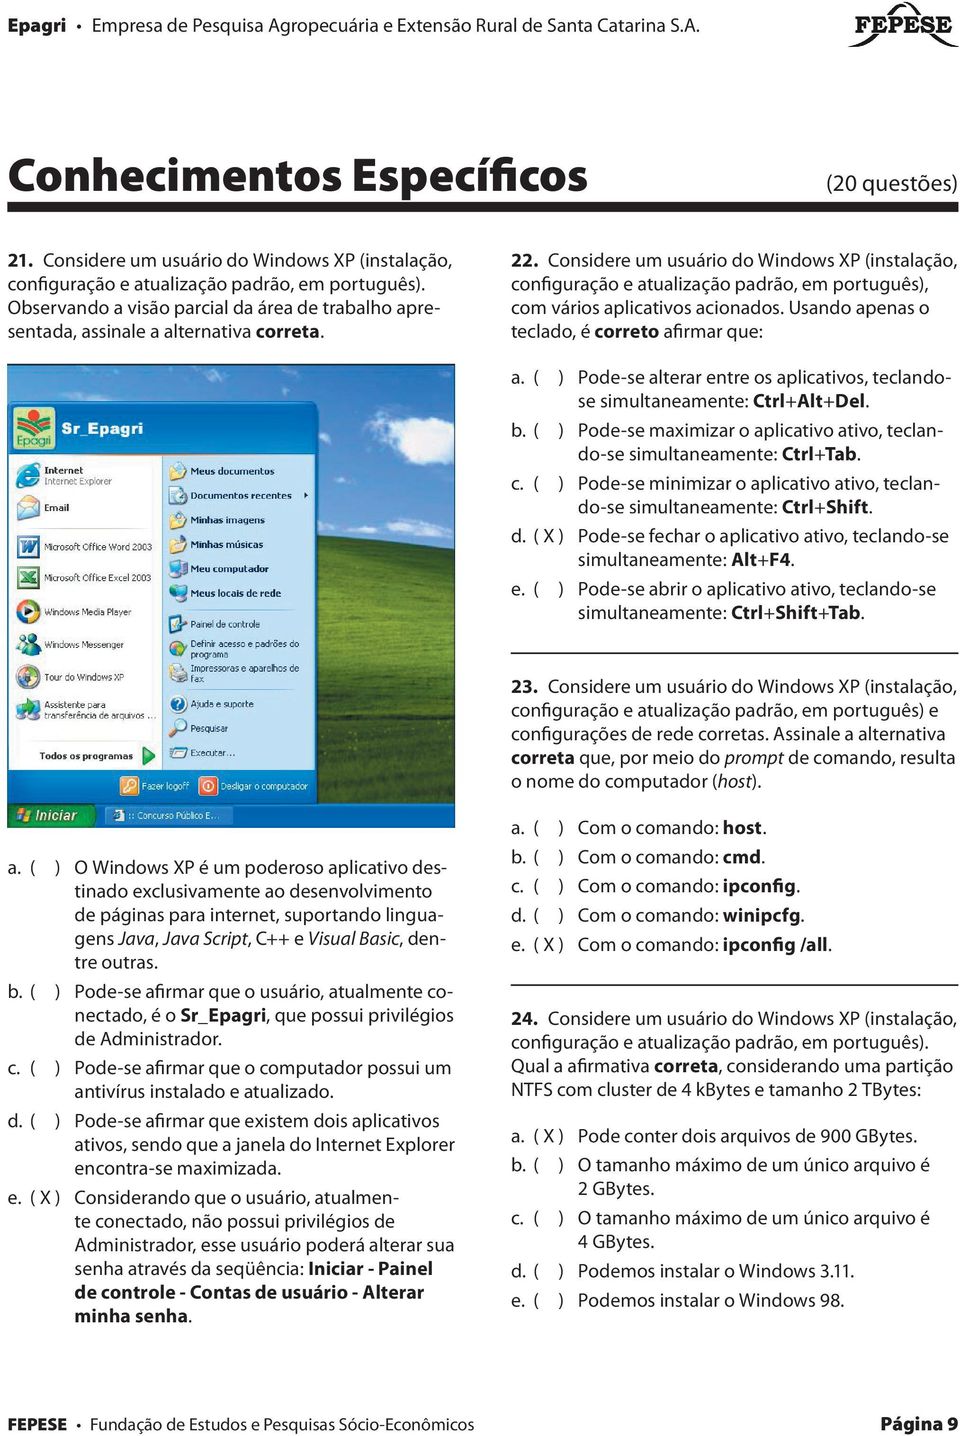 Considere um usuário do Windows XP (instalação, configuração e atualização padrão, em português), com vários aplicativos acionados.